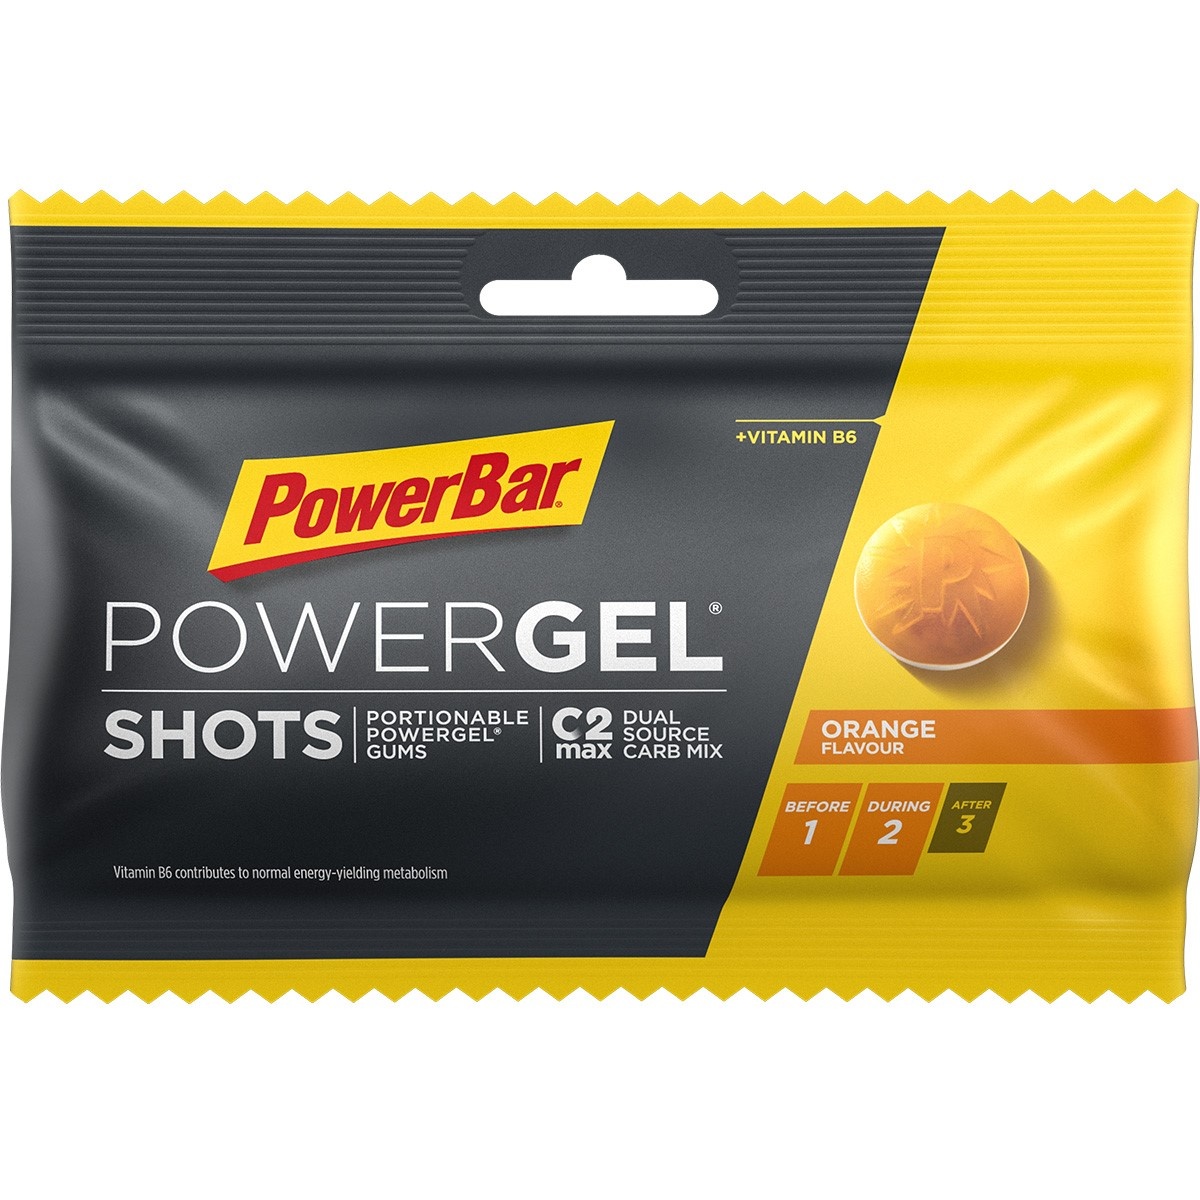 Tilbehør - Energiprodukter - Energigel - PowerBar PowerGel shots - Vingummi - Orange